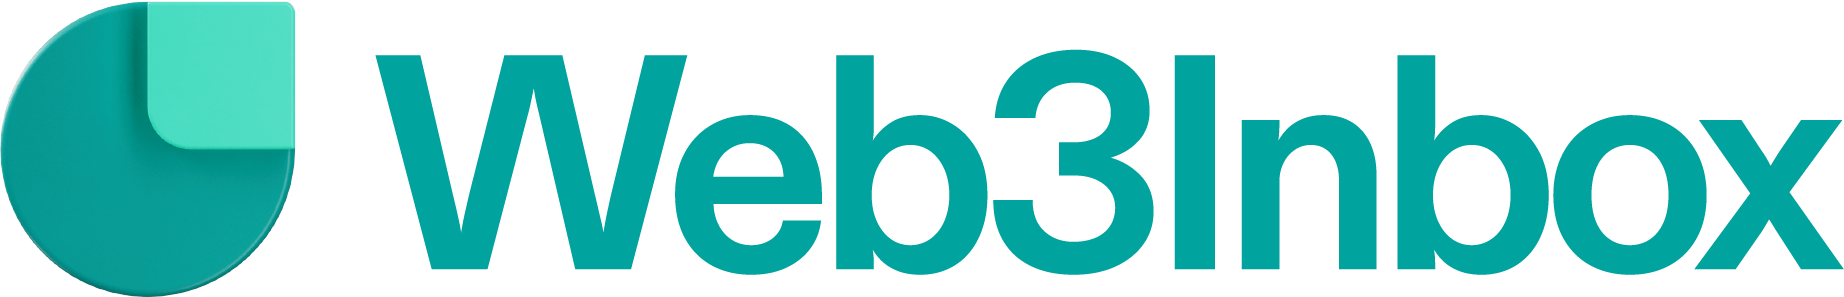 Web3Inbox logo